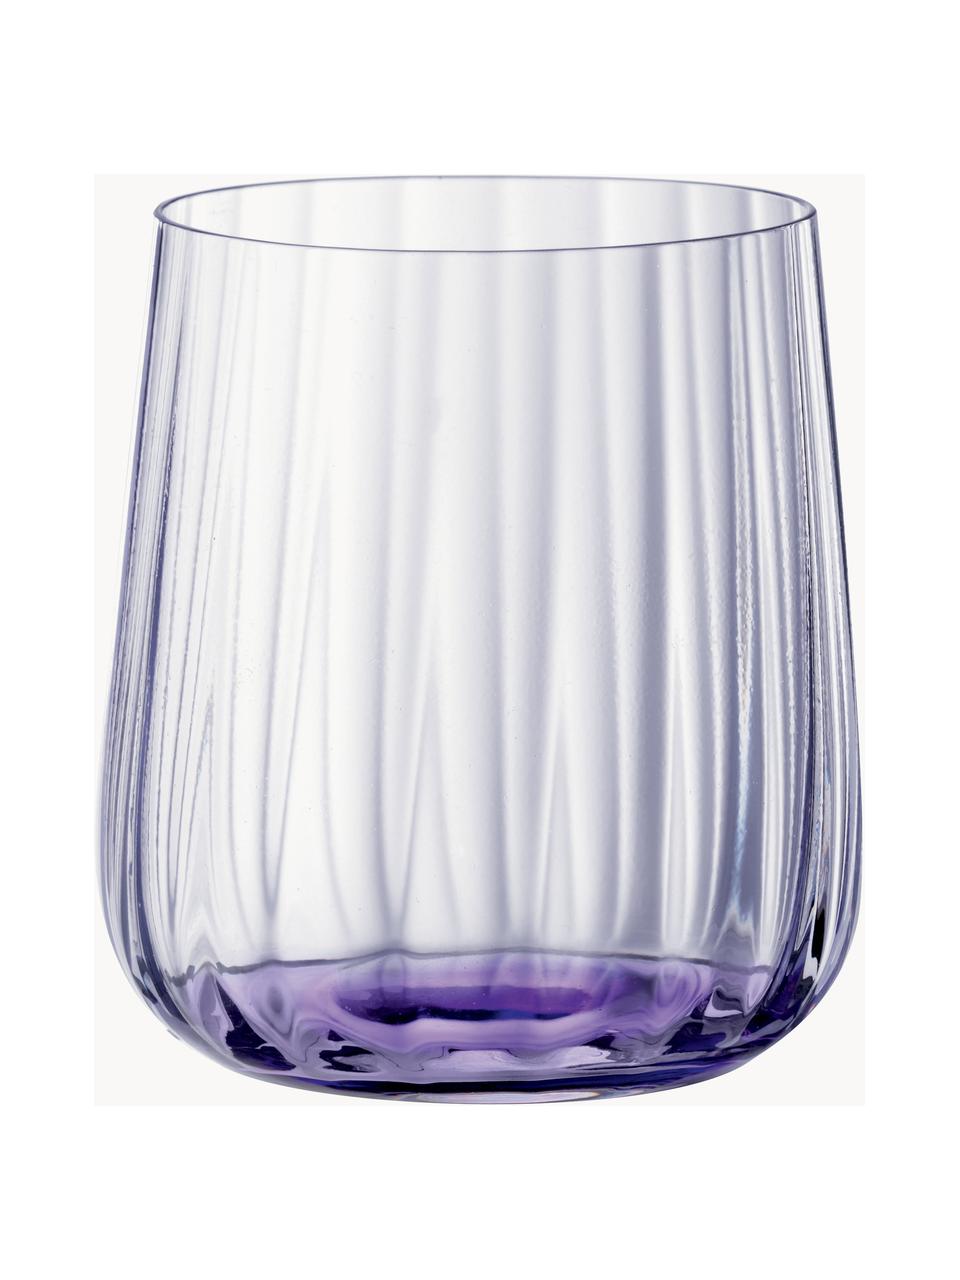 Kristall-Gläser Lifestyle, 2 Stück, Kristallglas, Lila, Ø 8 x H 9 cm, 340 ml